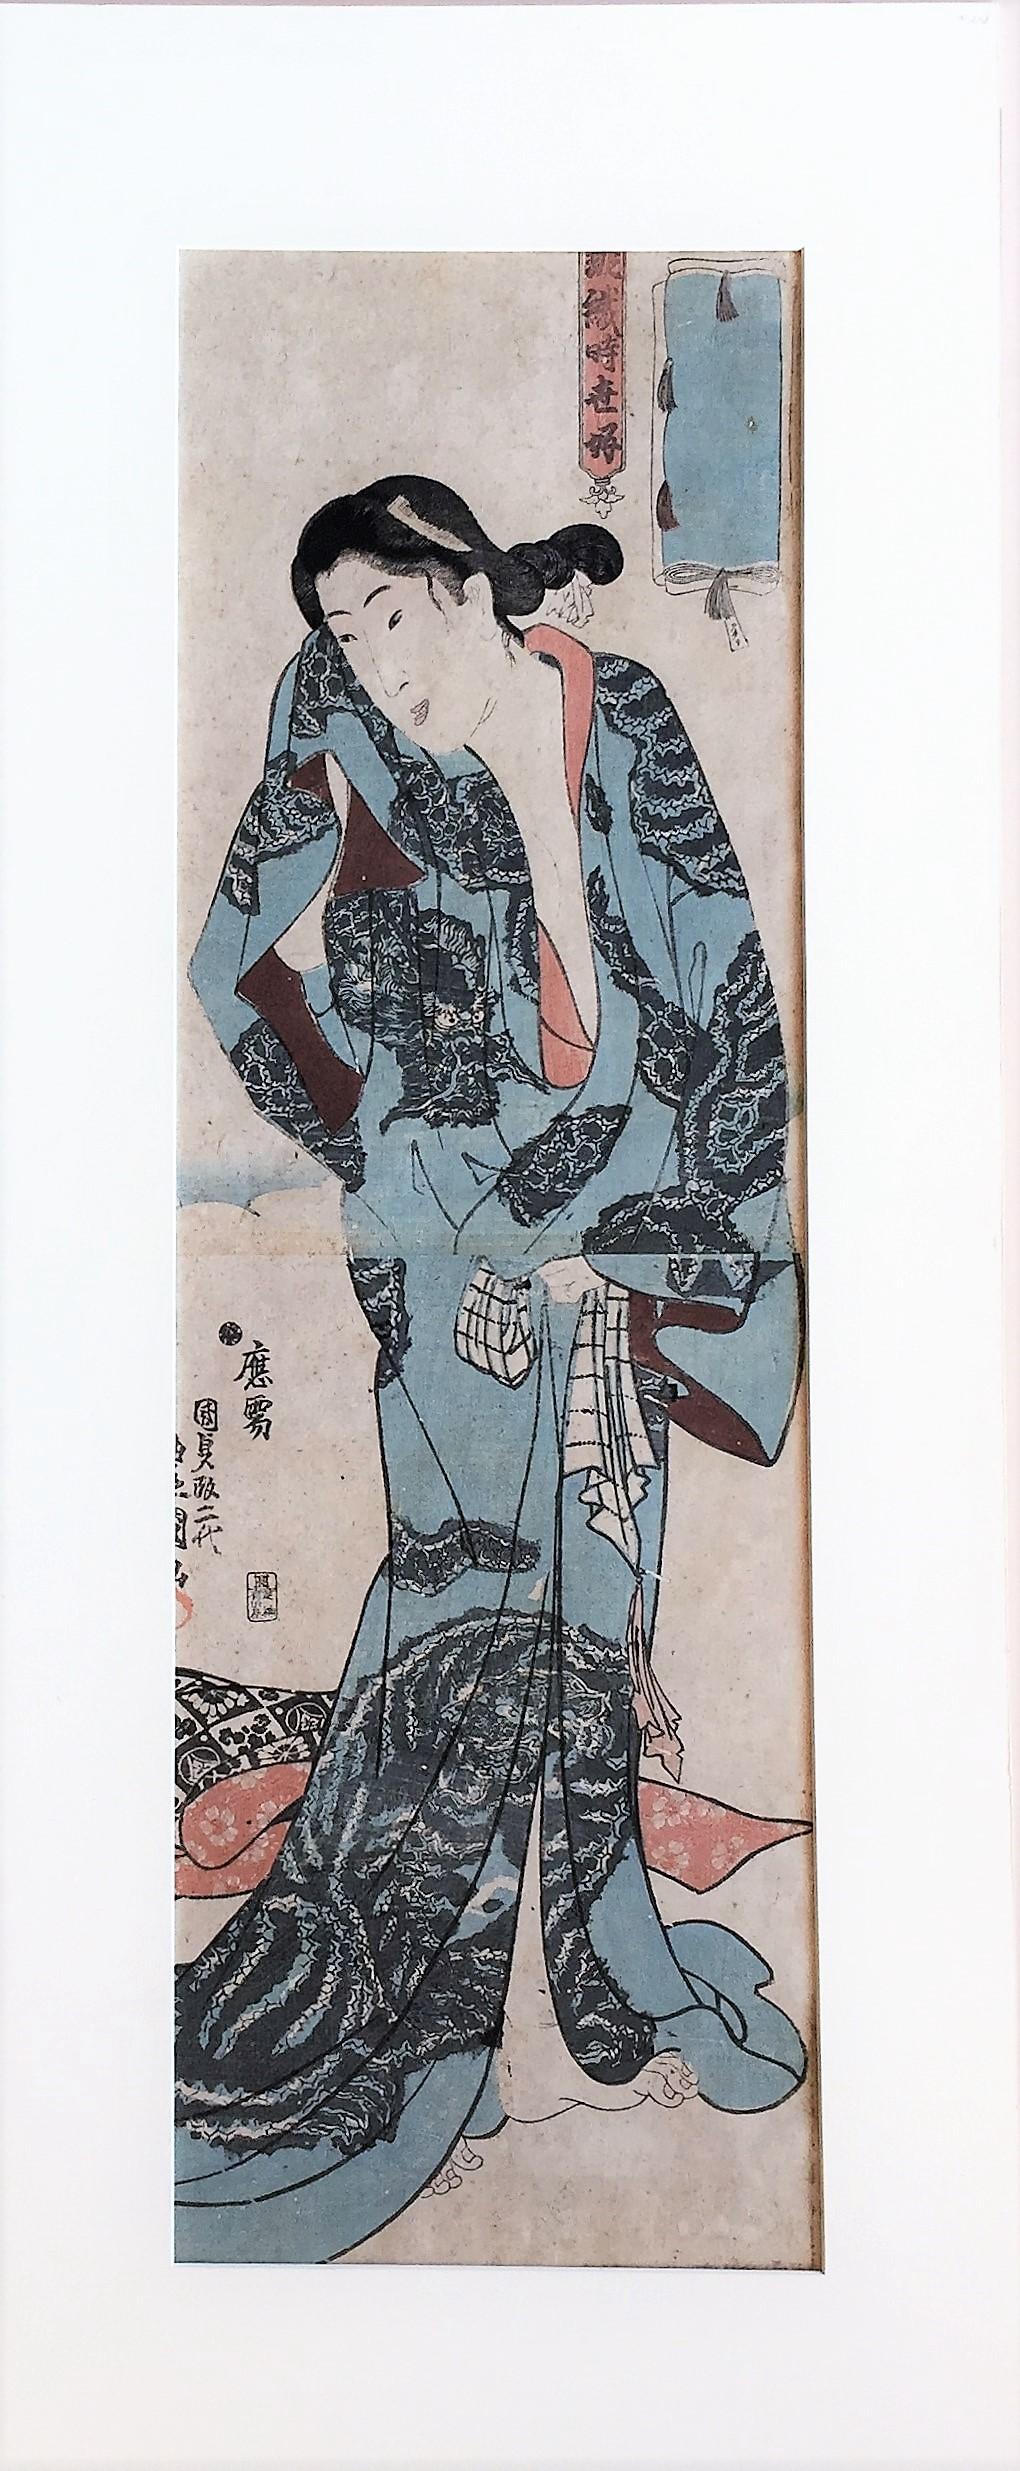 [After the Bath] - Edo Print by Utagawa Kunisada (Toyokuni III)